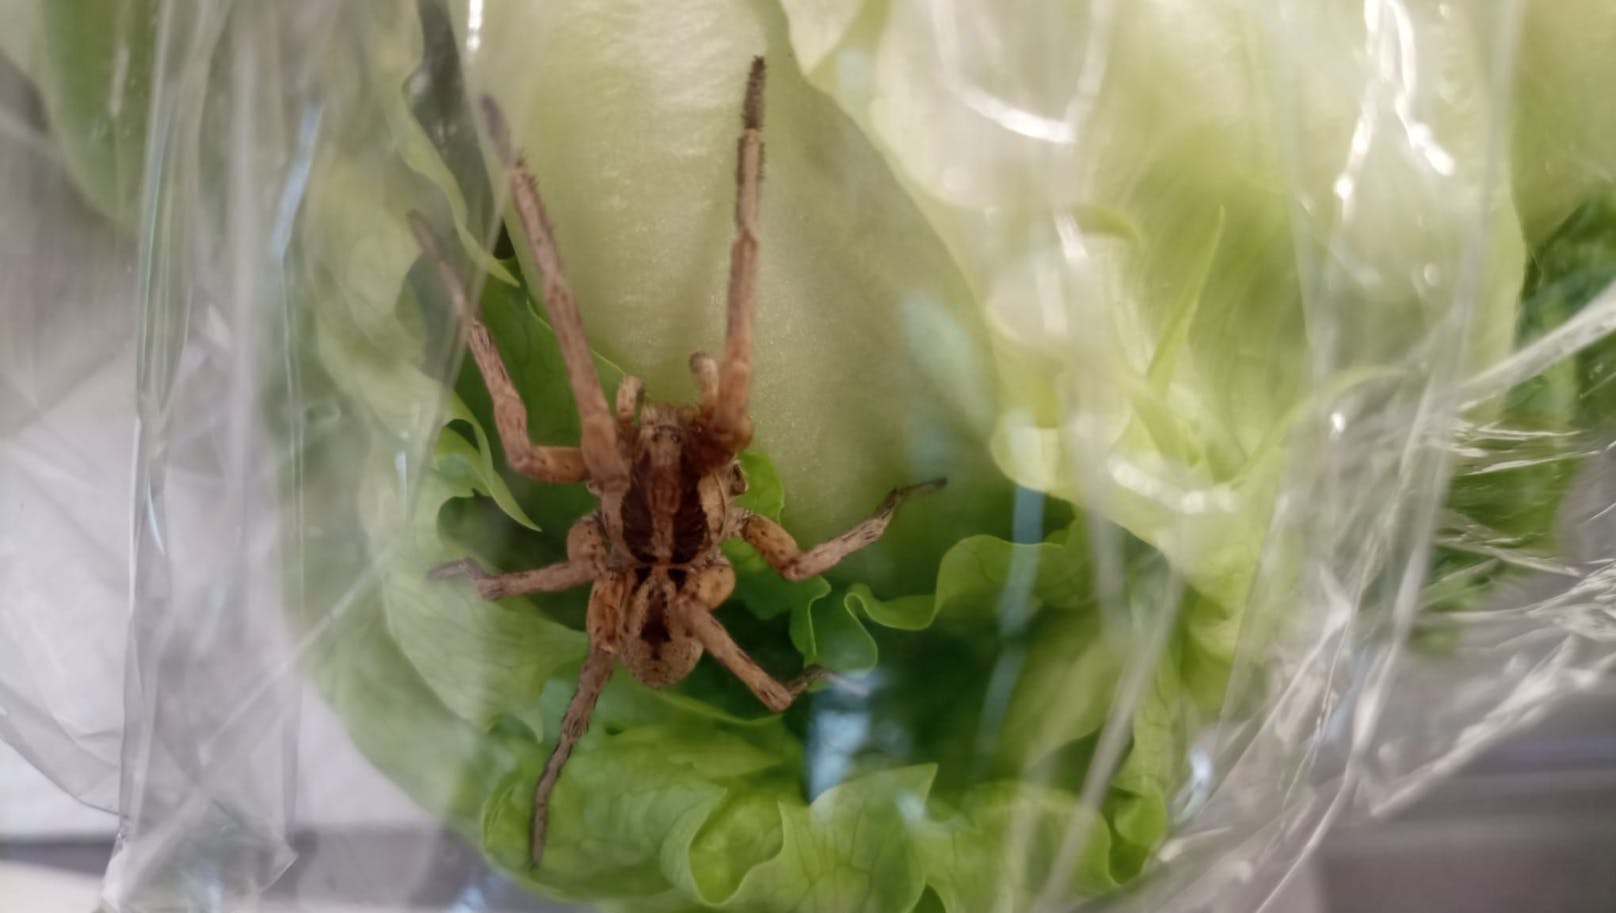 Diese 4-Zentimeter-Spinne wurde in einem Eisbergsalat in einem Linzer Supermarkt gefunden.